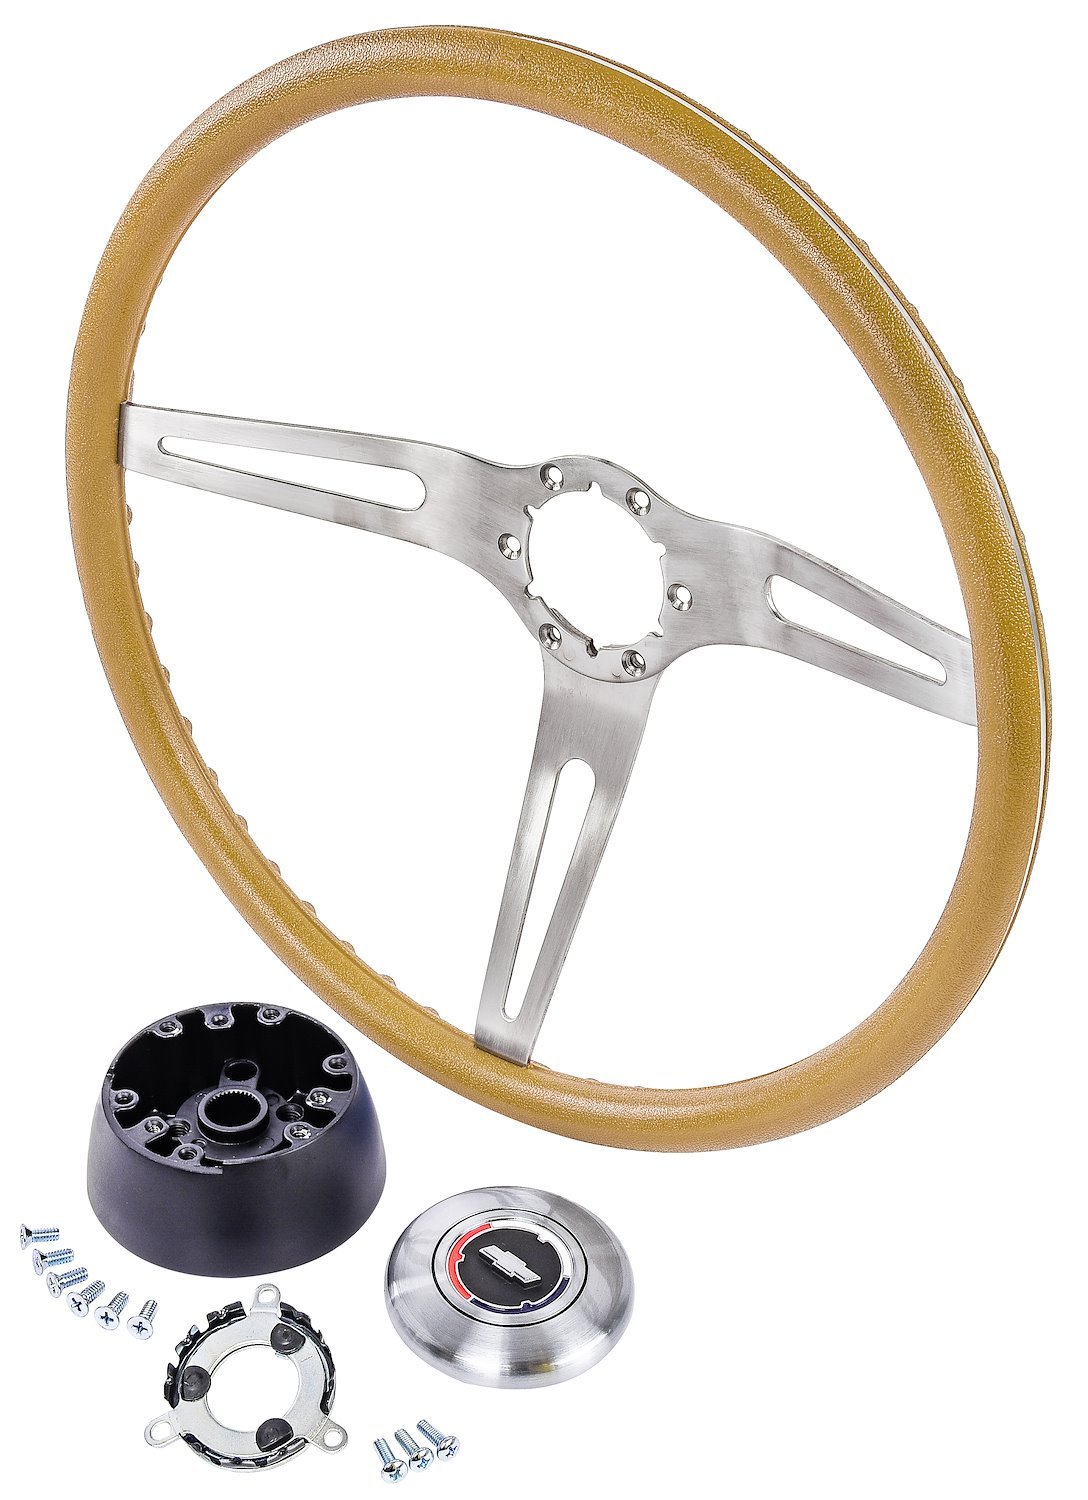 3-Spoke Comfort Grip Steering Wheel Kit for Select